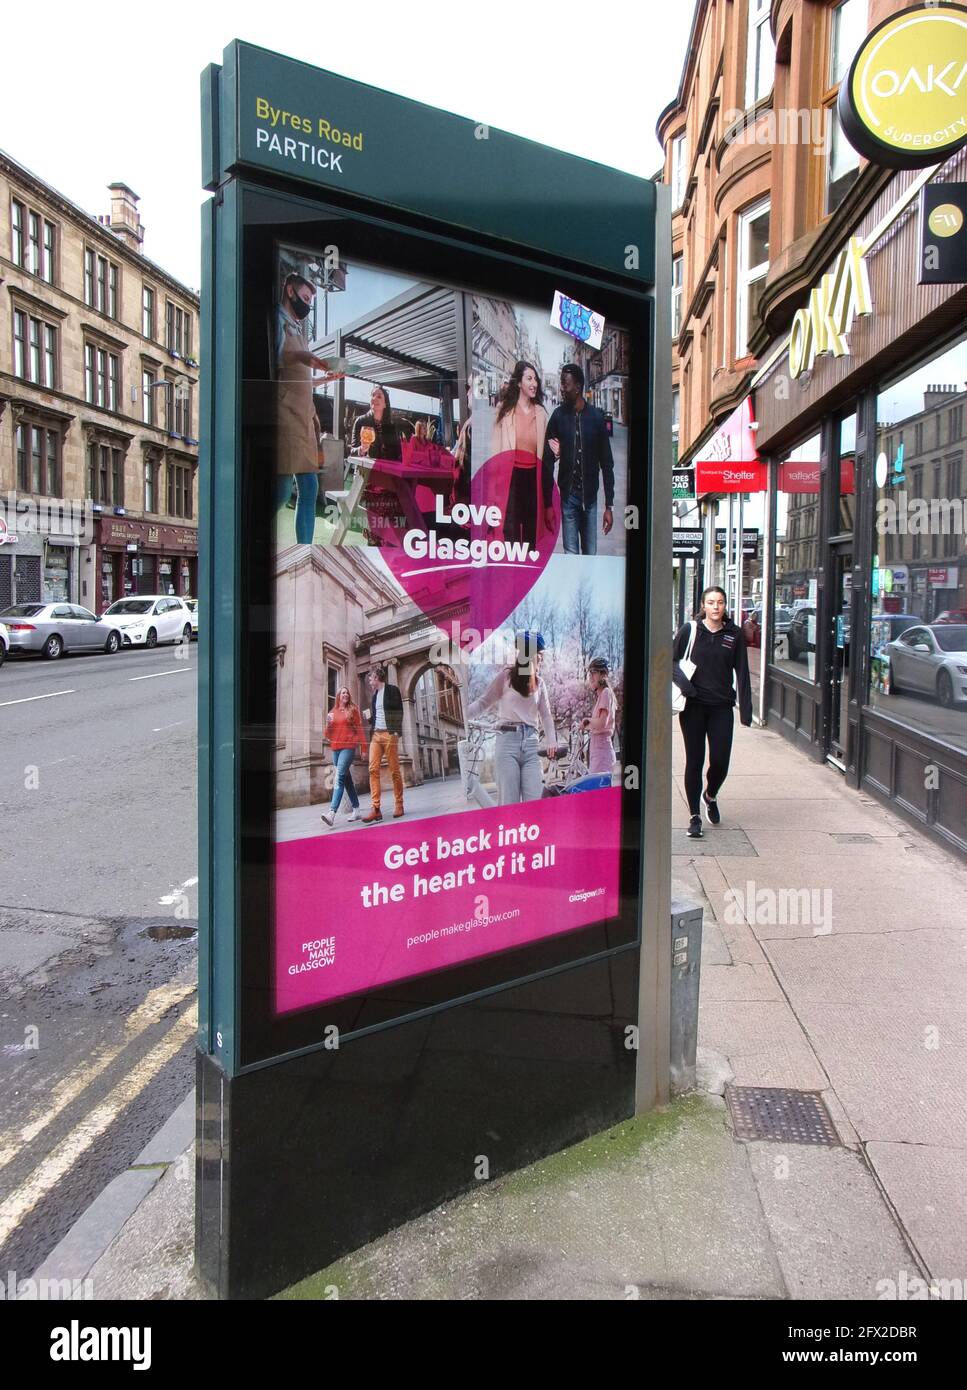 Eine Werbesäule in der Byres Road, preist die Menschen, nach Glasgow zu kommen und einen Besuch in der Stadt zu genießen. Es versucht Touristen, Besucher und Urlauber zu ermutigen, Glasgow zu besuchen. Genießen Sie die Einkaufsmöglichkeiten, Sehenswürdigkeiten und den Empfang von großartigen Menschen, Einer großartigen schottischen Stadt. 2021. ©ALAN WYLIE/ALAMY Stockfoto